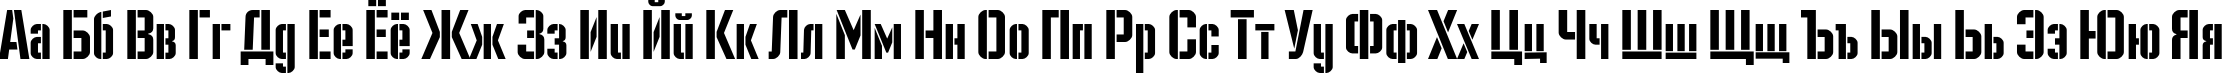 Пример написания русского алфавита шрифтом Danger